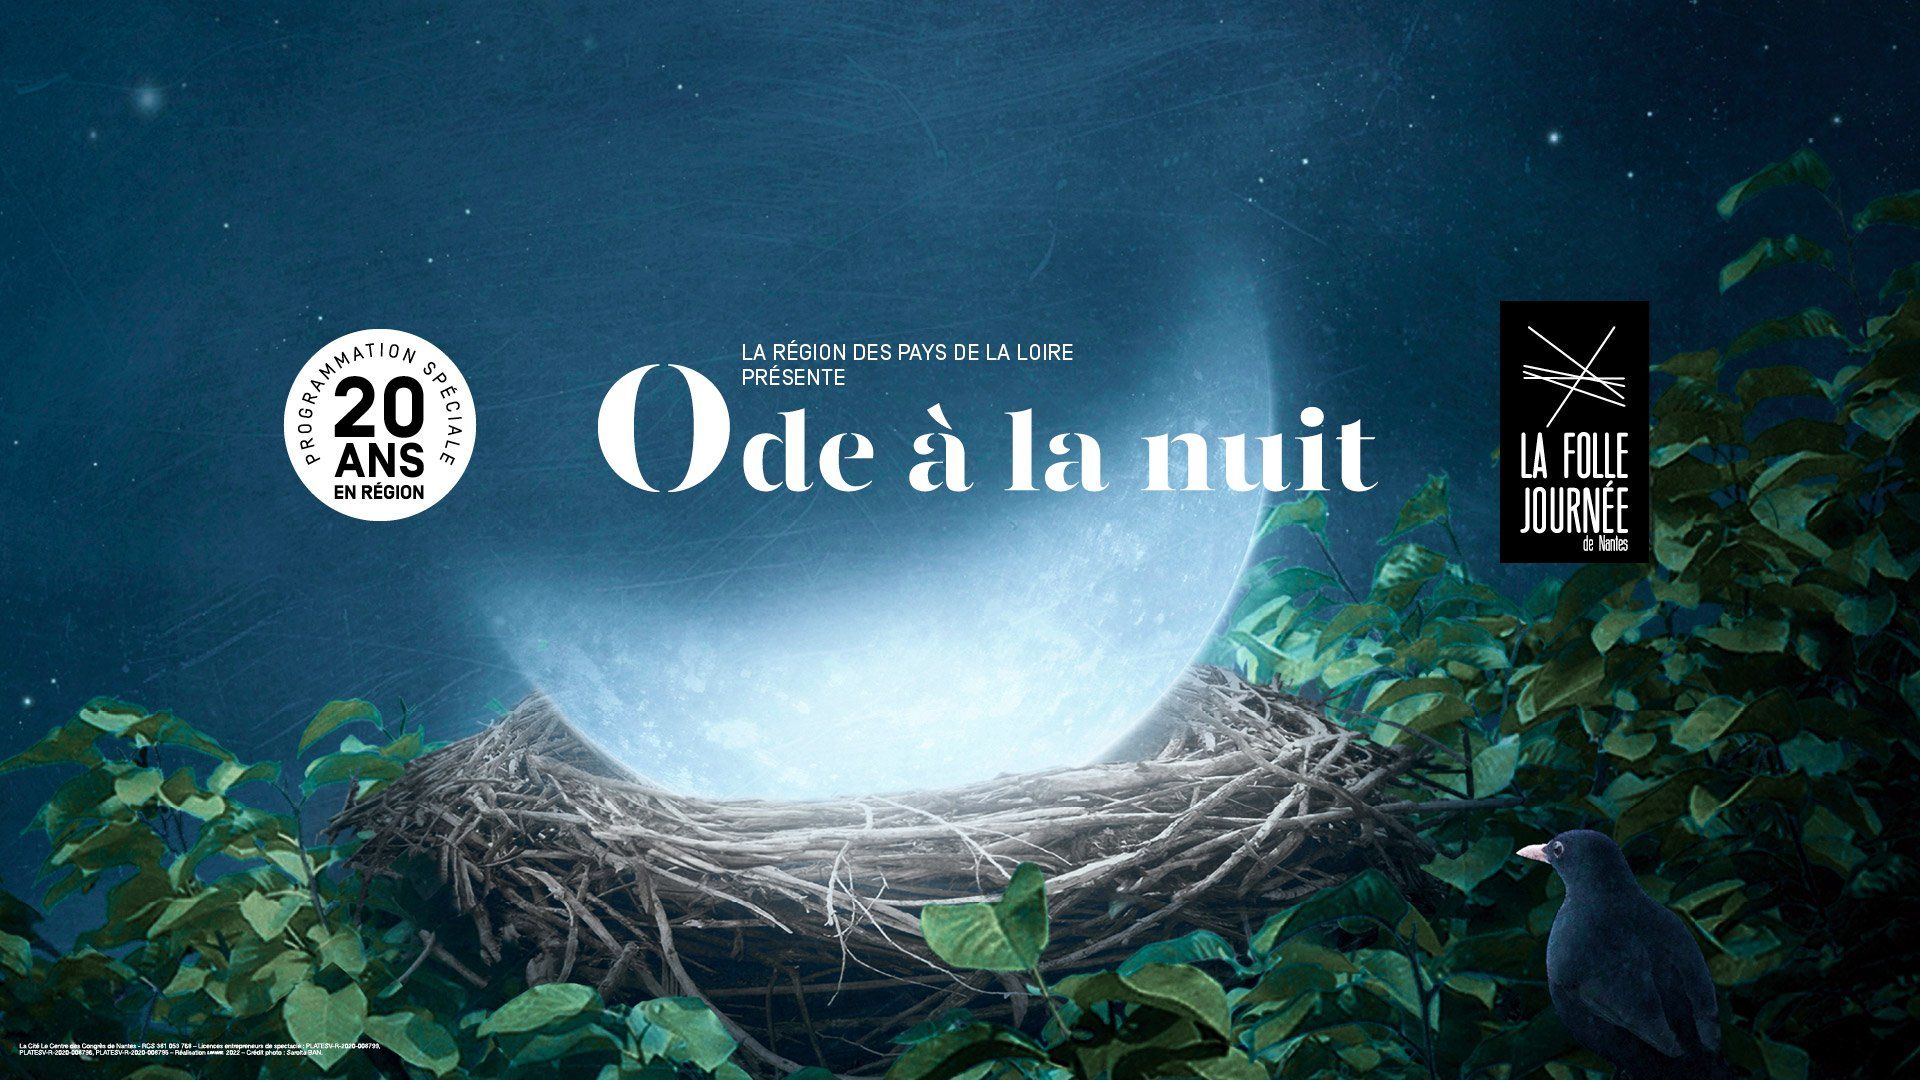 Programmation spéciale 20 ans en région. La Région des Pays de la Loire présente Ode à la nuit. La Folle Journée de Nantes